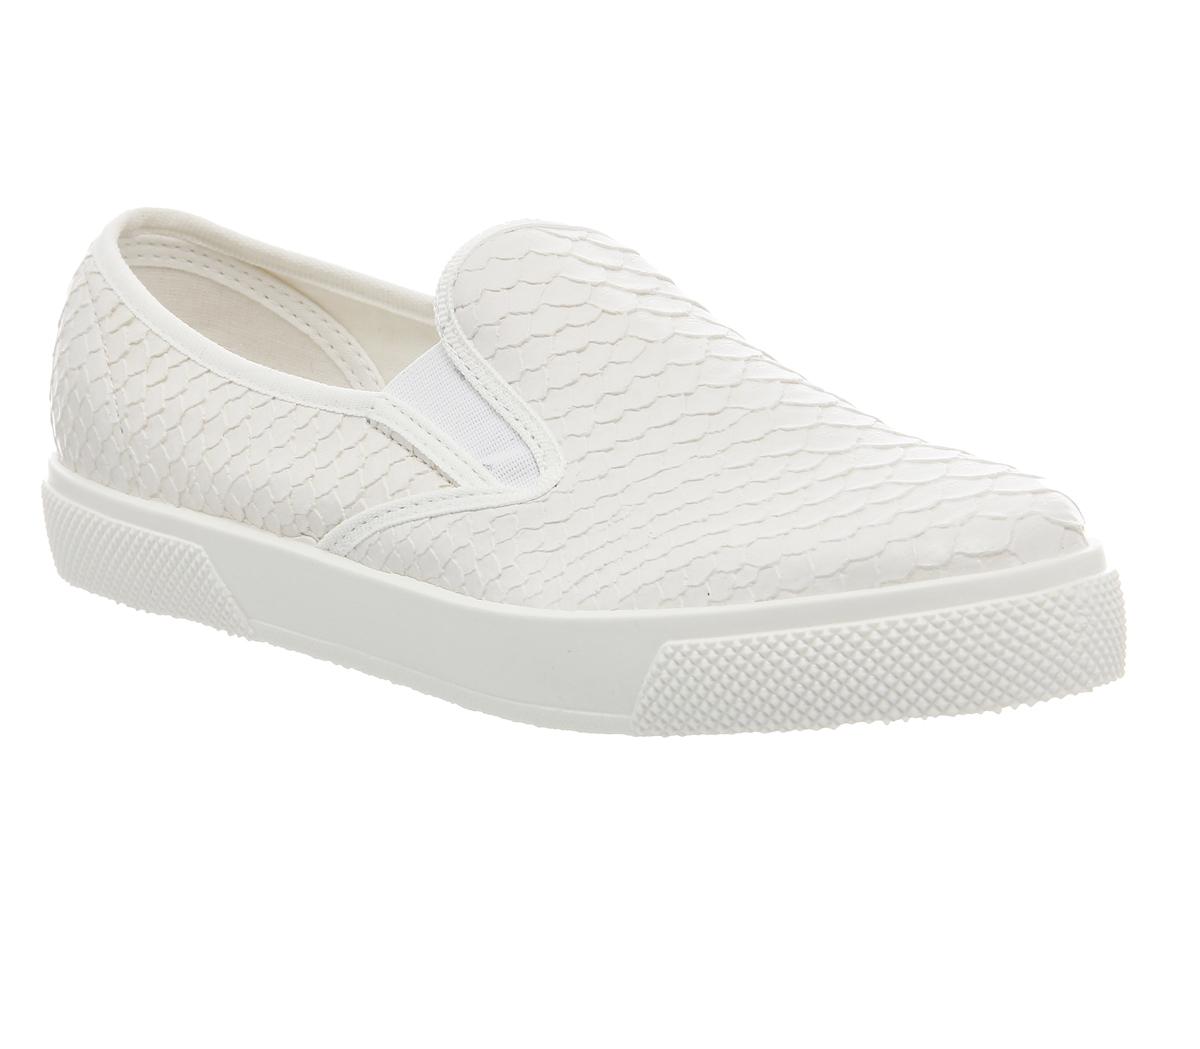 Office Kicker Slip On Shoes White Snake - Flat Shoes for Women